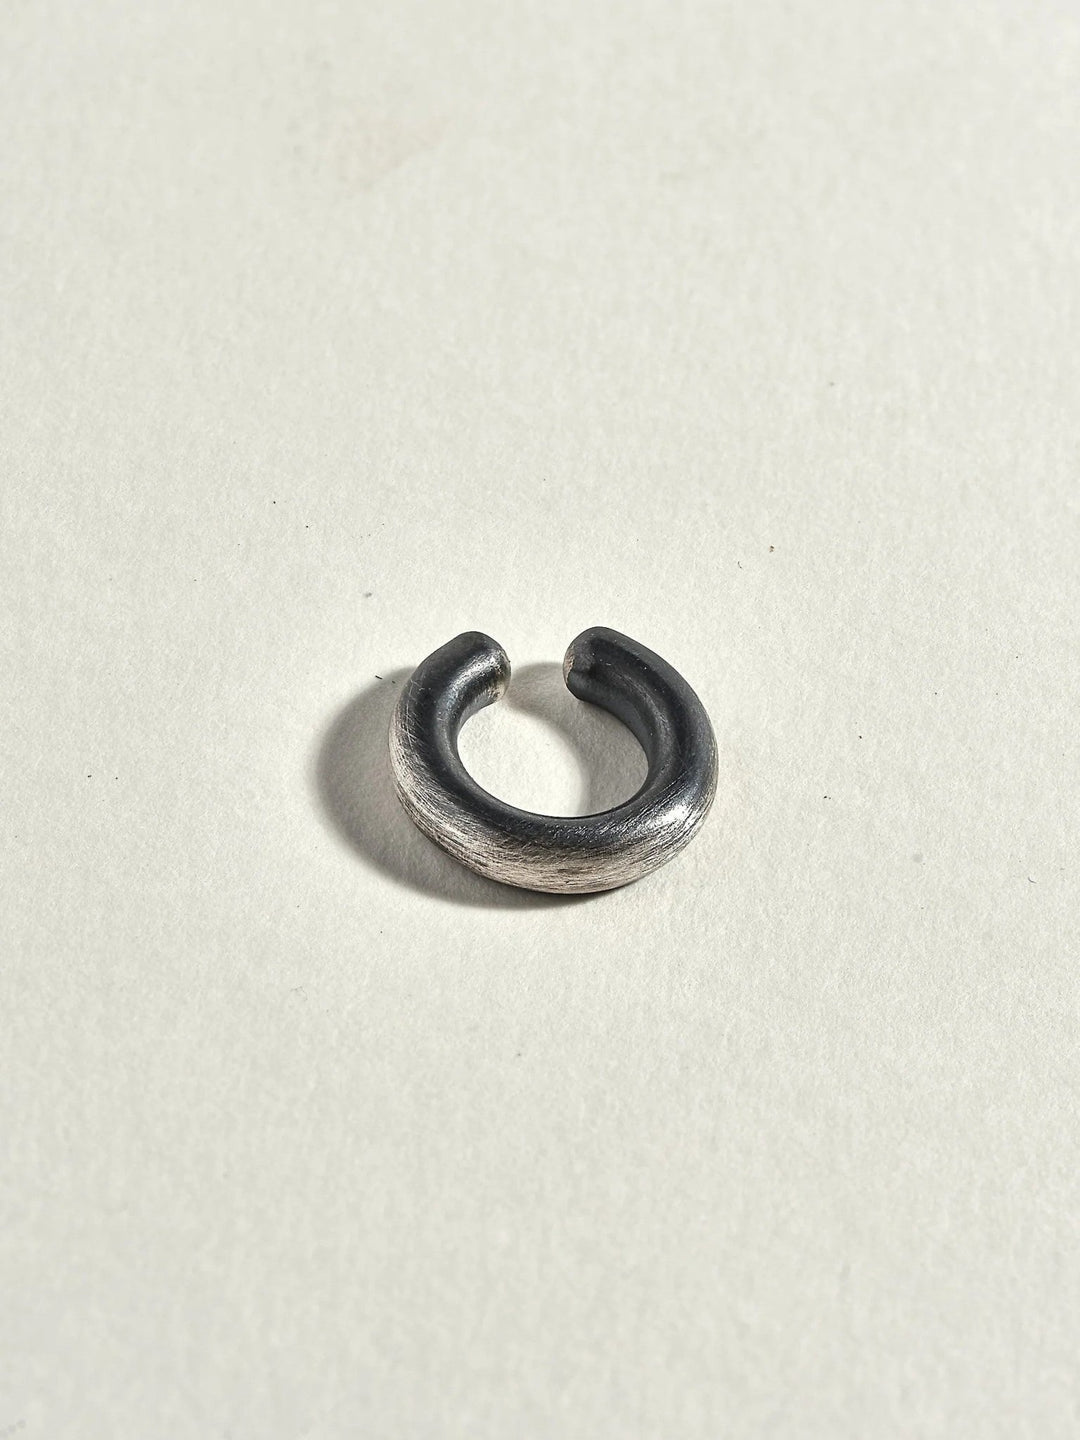 Mathias Men's Silver Oxide Cuff Earring - 925 Silver OxideCartilage EarringsCuff & Wrap EarringsLunai Jewelry